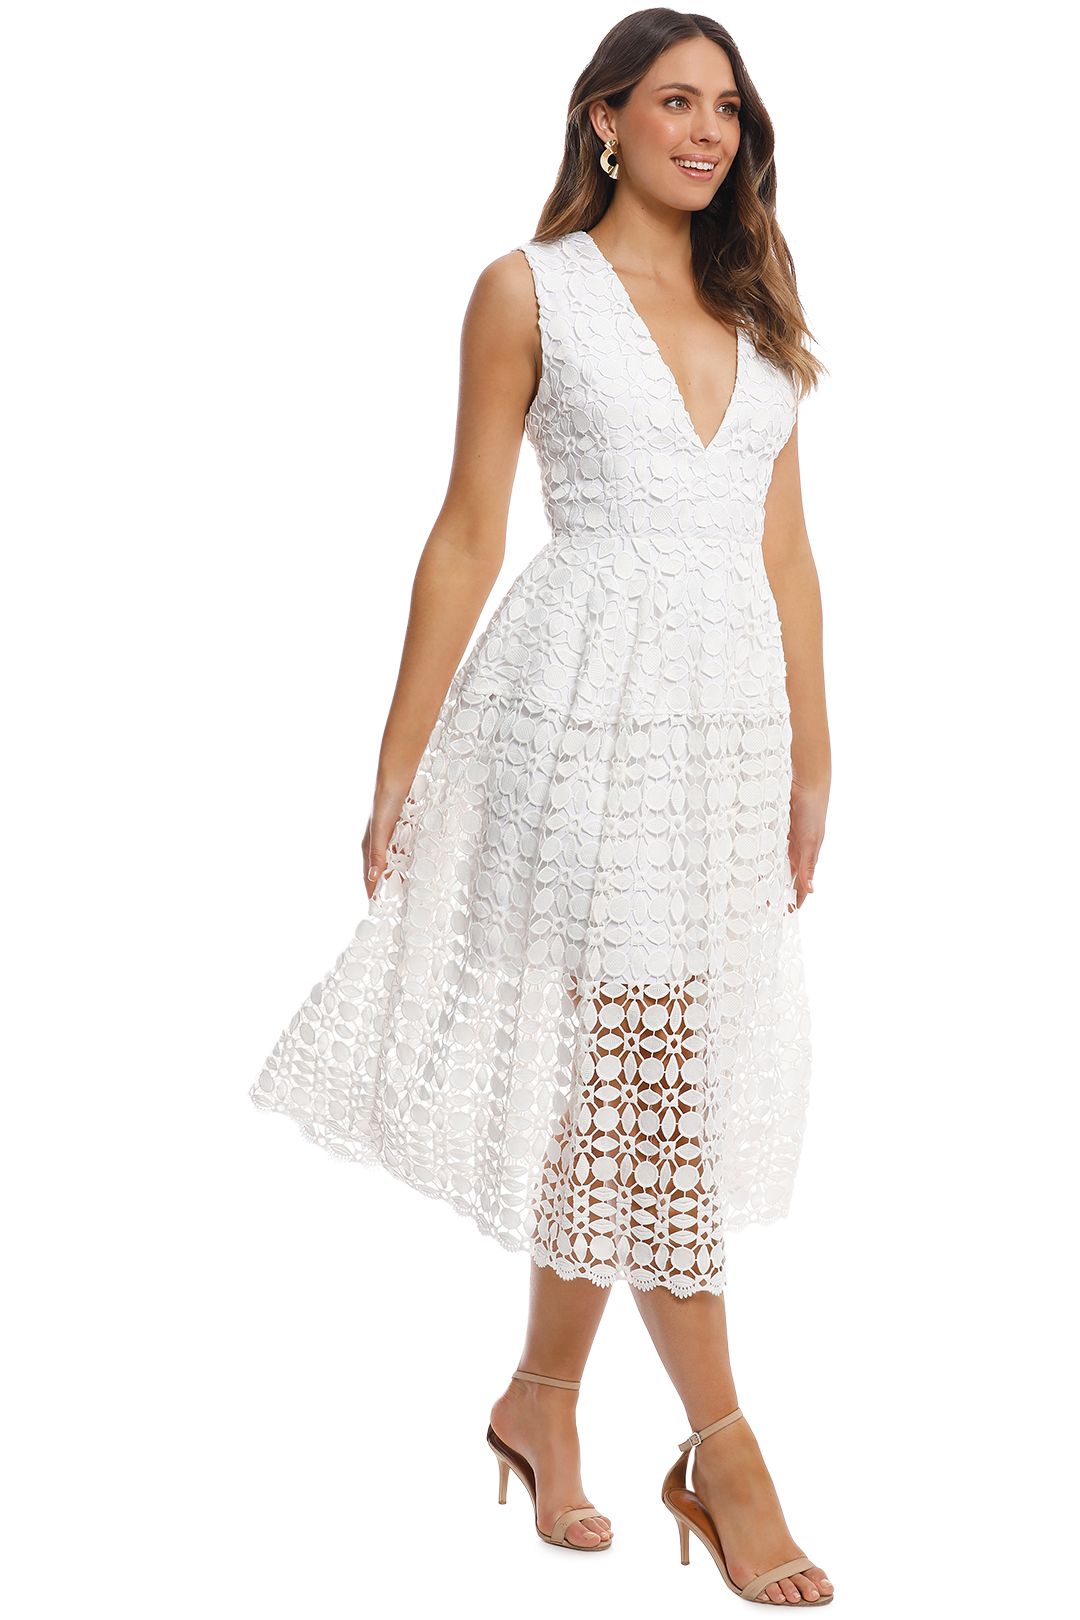 Nicholas - Mosaic Lace Ball Dress - White - Side